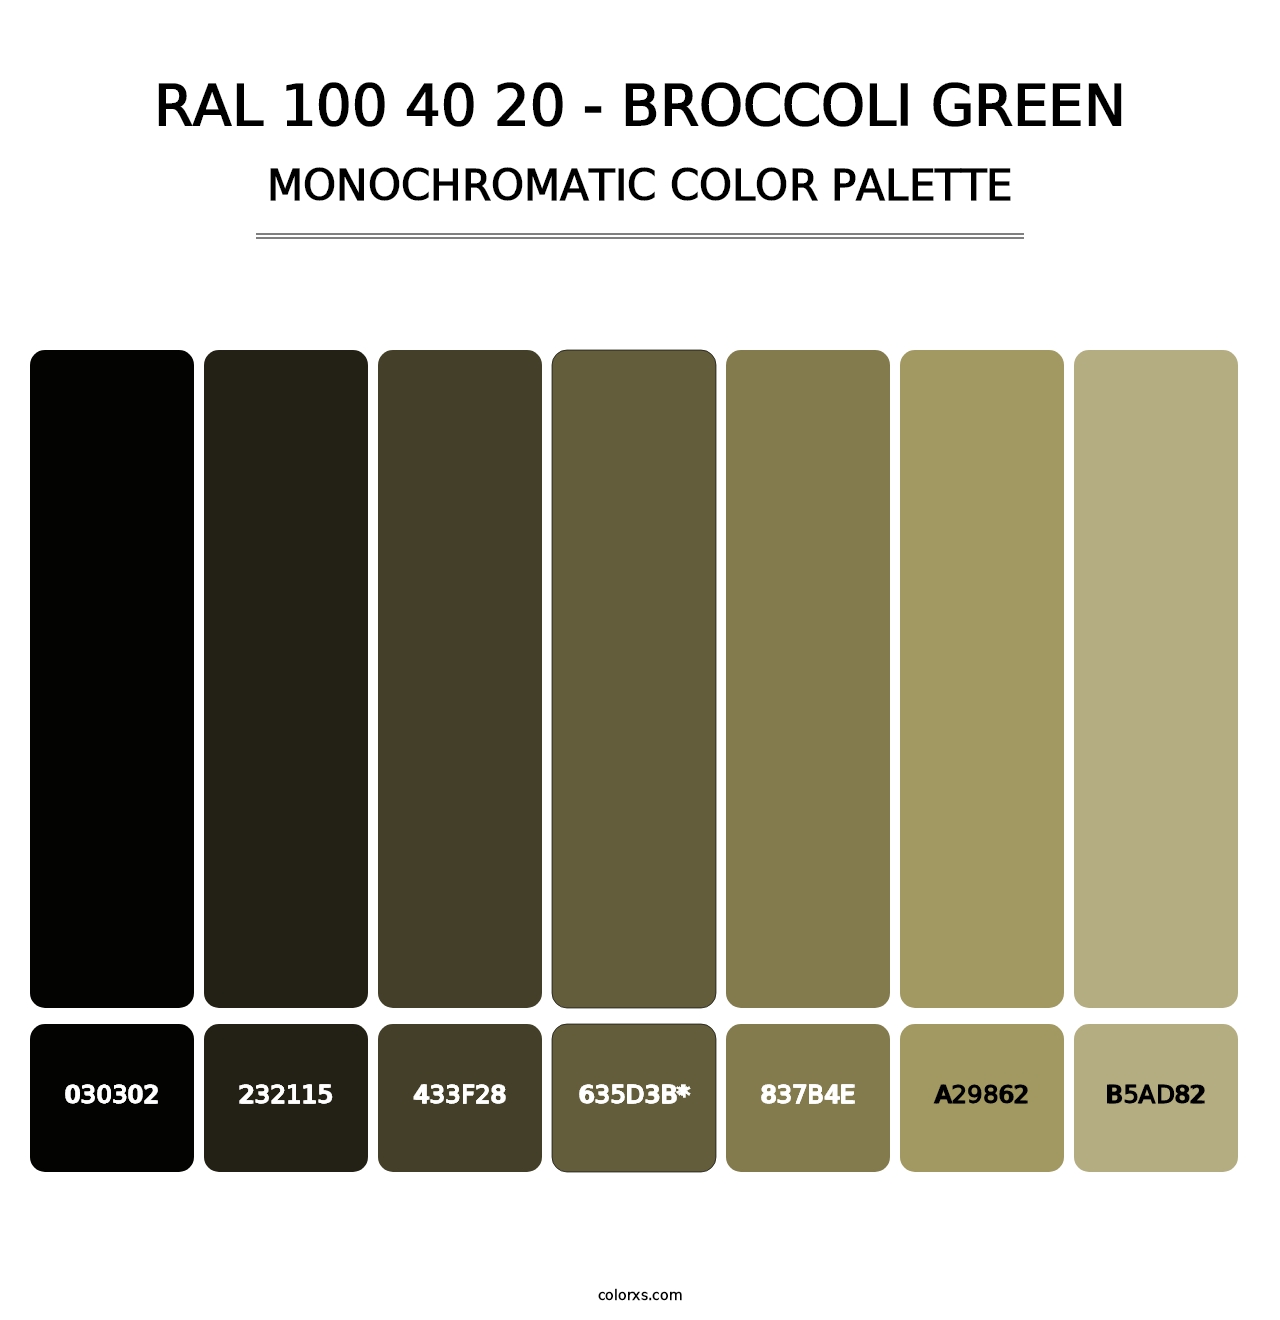 RAL 100 40 20 - Broccoli Green - Monochromatic Color Palette